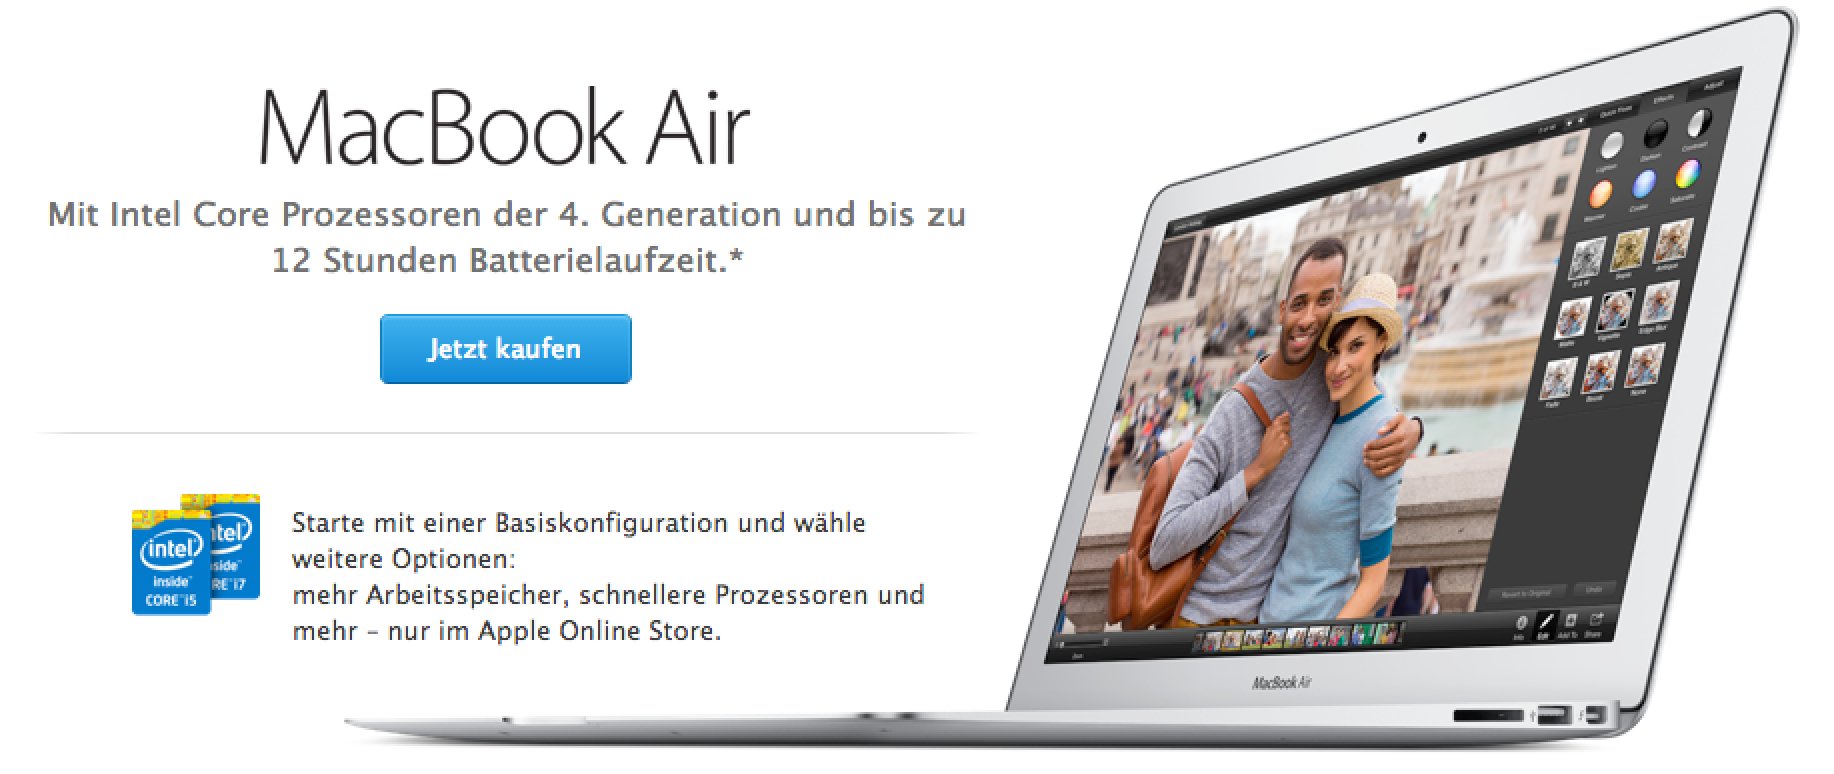 Macbook Air 2014 ist da - schneller und 100 Euro billiger! 2